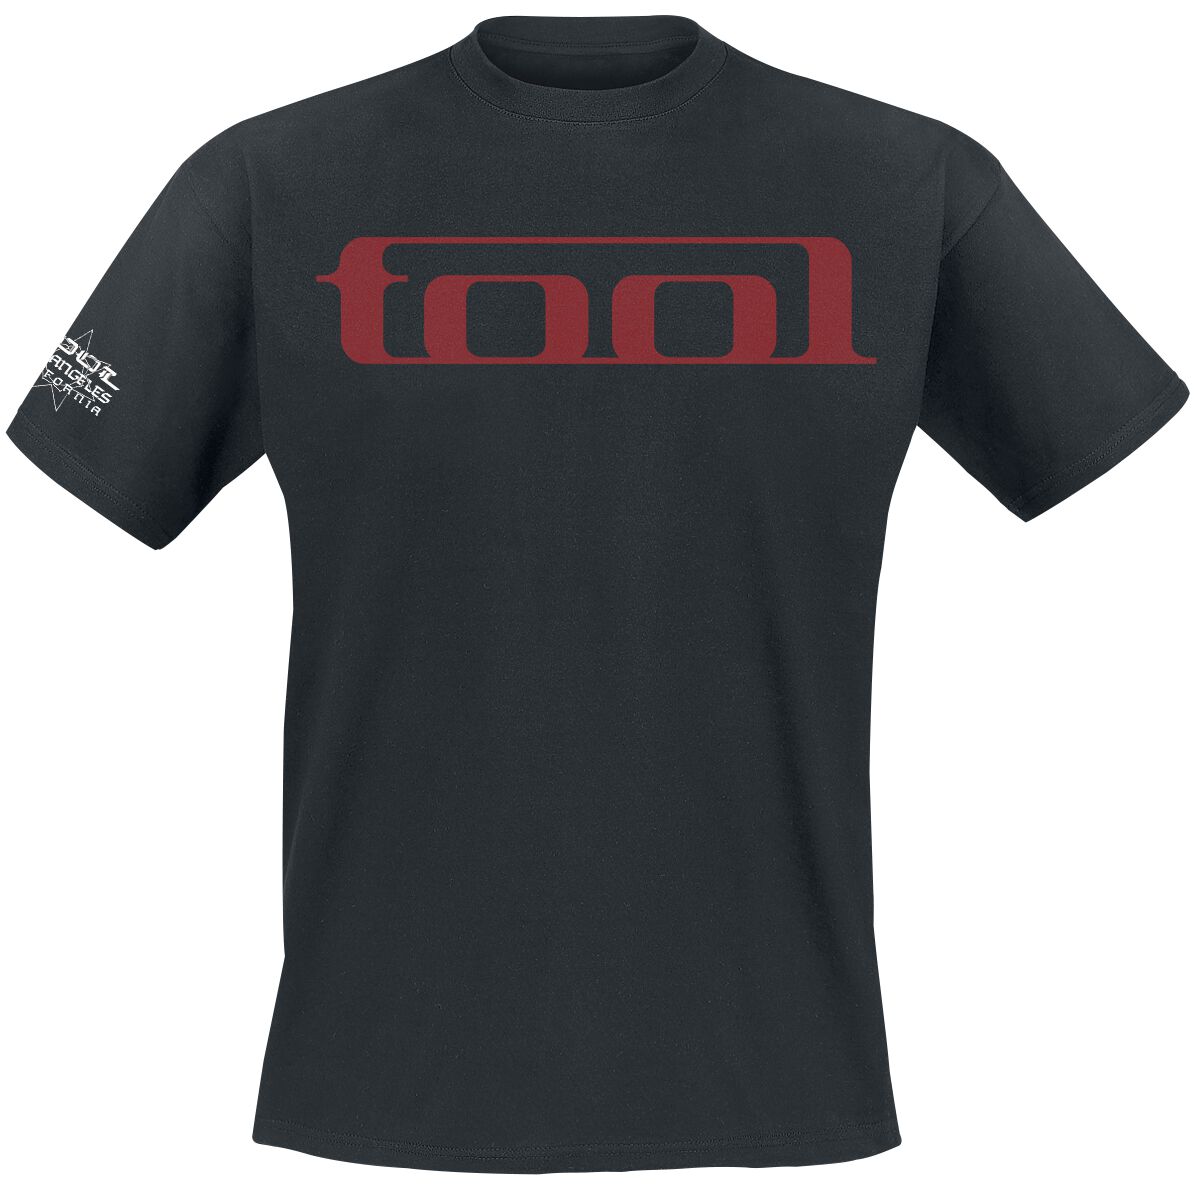 Tool T-Shirt - Undertow - S bis XXL - für Männer - Größe L - schwarz  - Lizenziertes Merchandise!